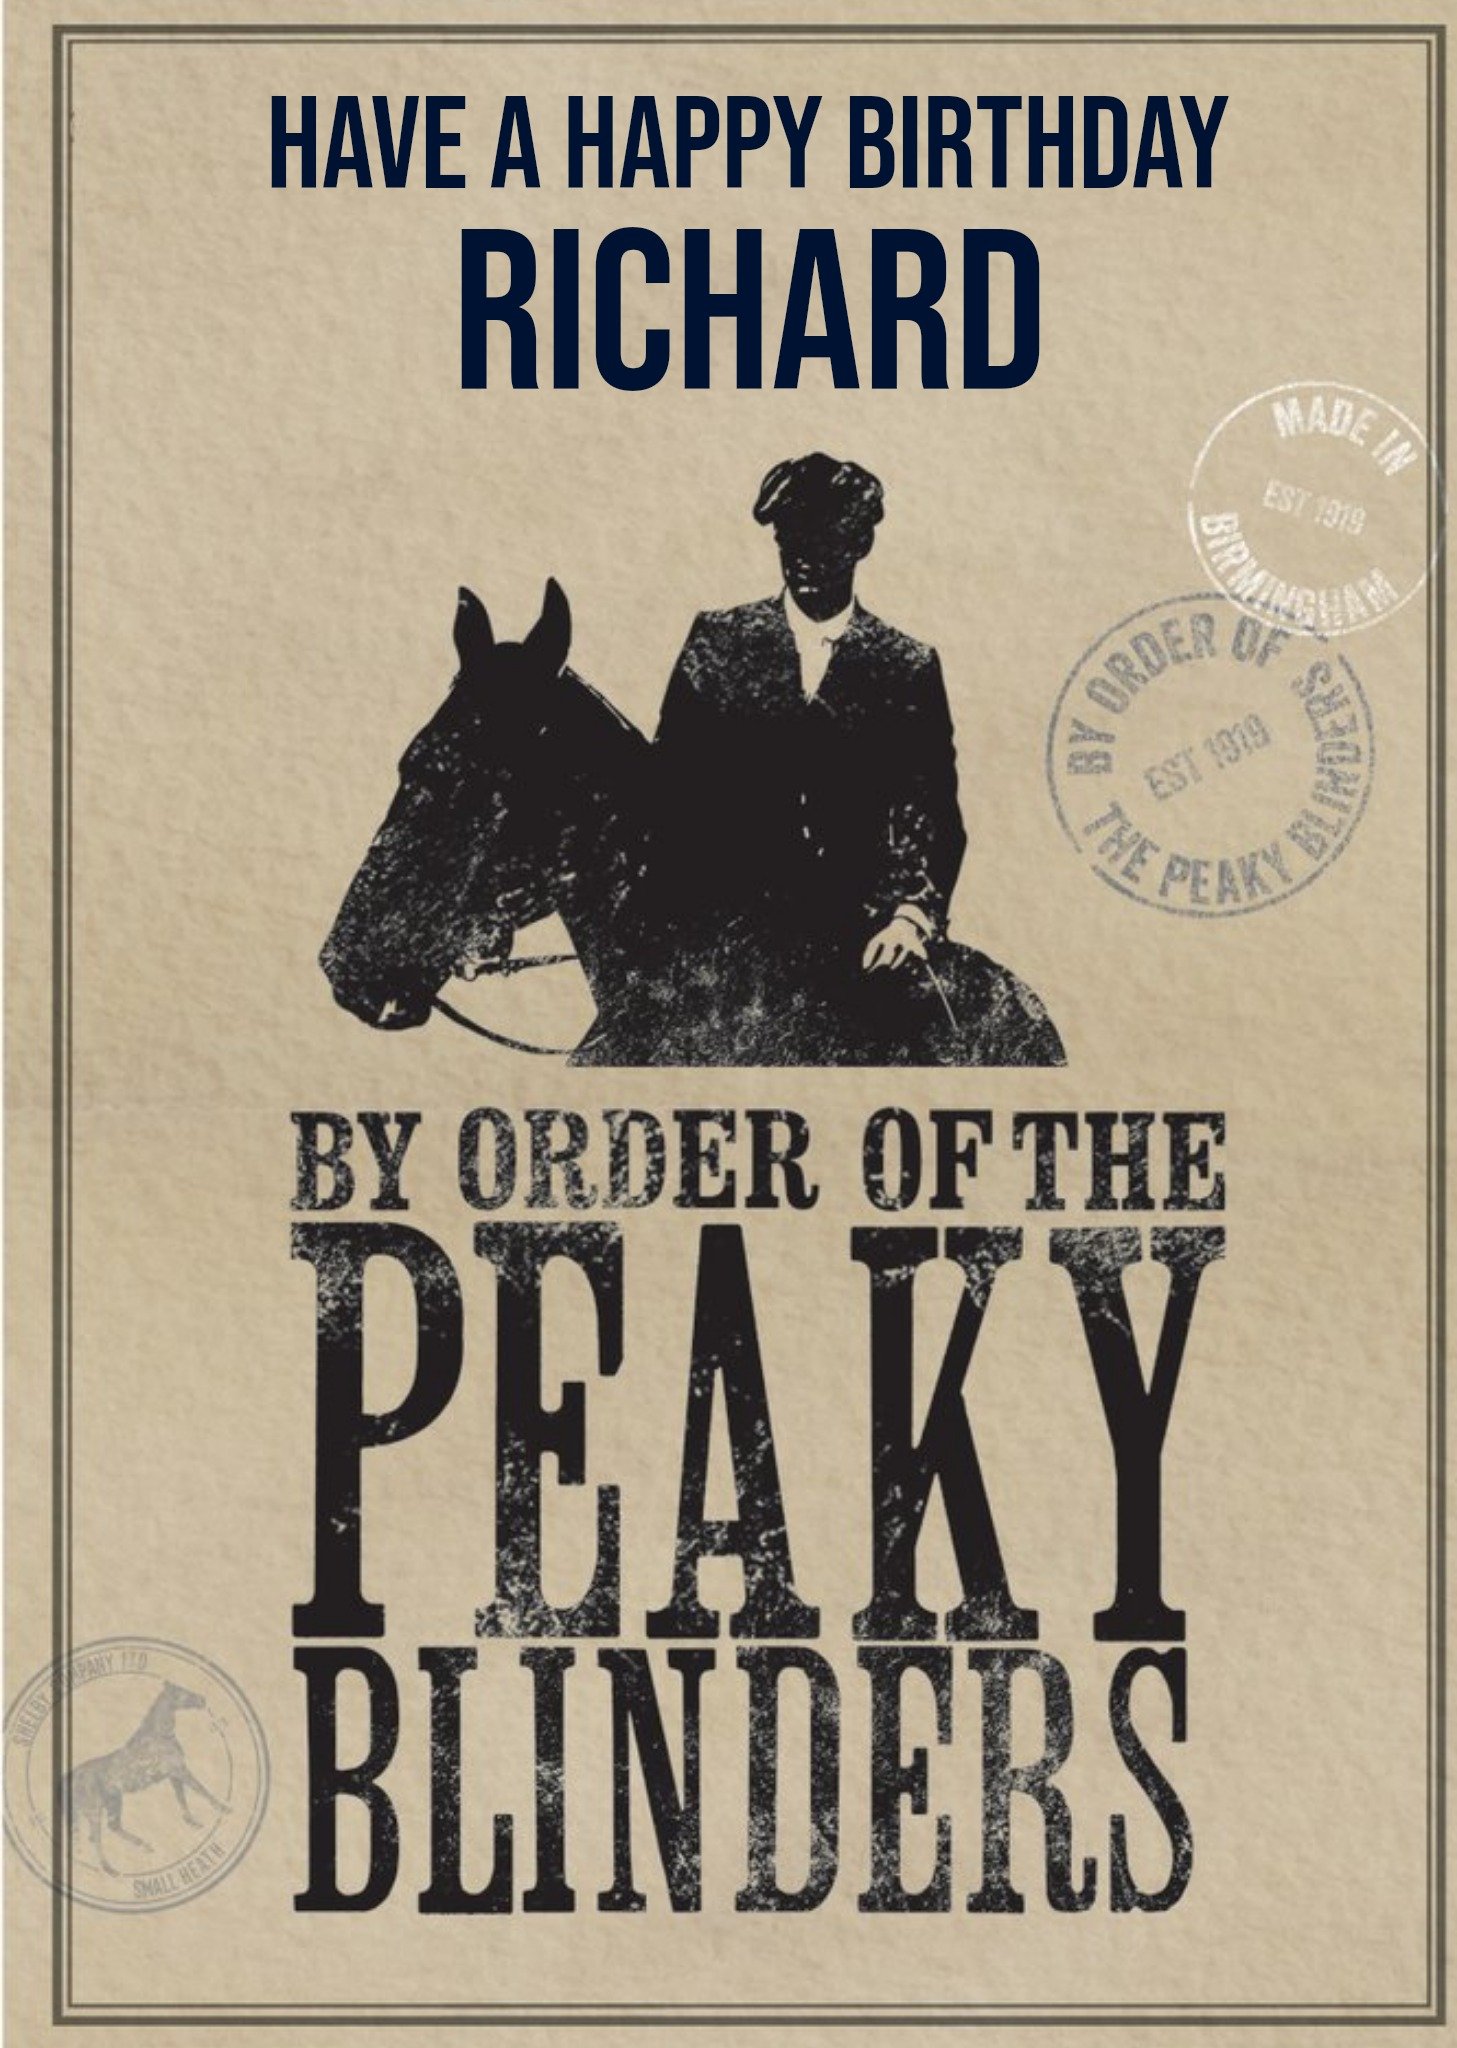 Peaky Blinders Birthday Card By Order Of The Peaky Blinders Ecard